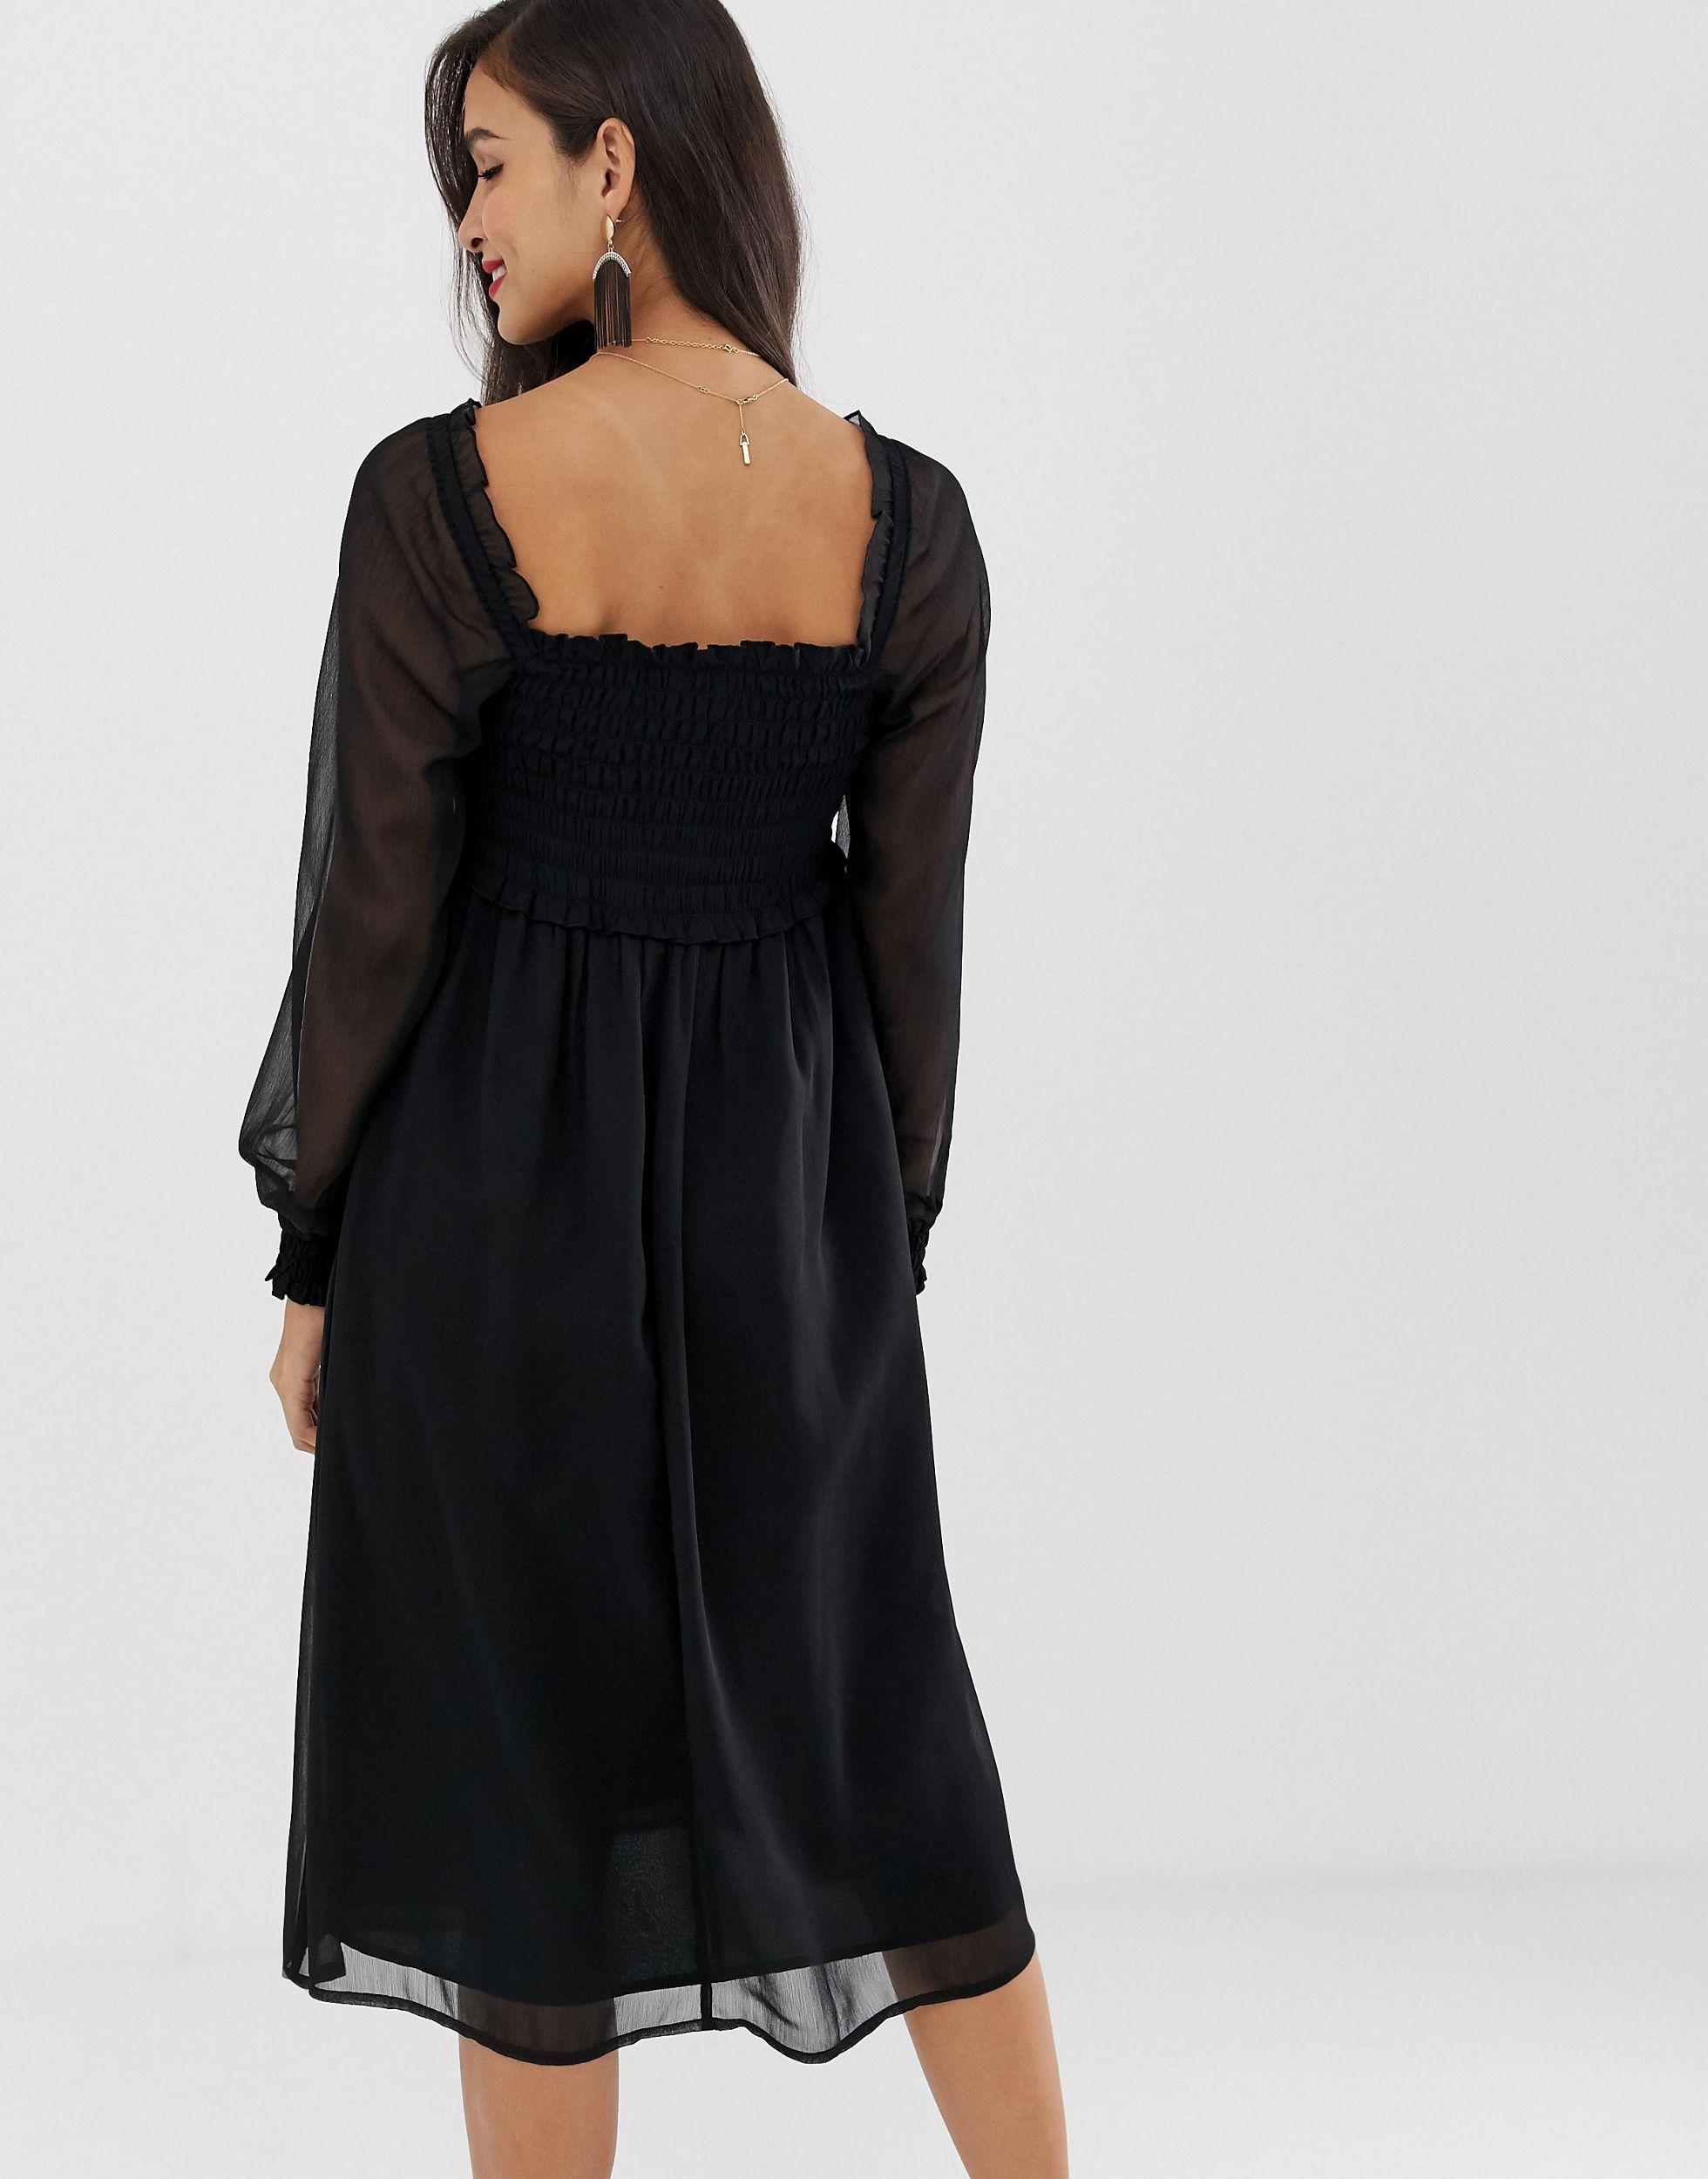 black.midi dress